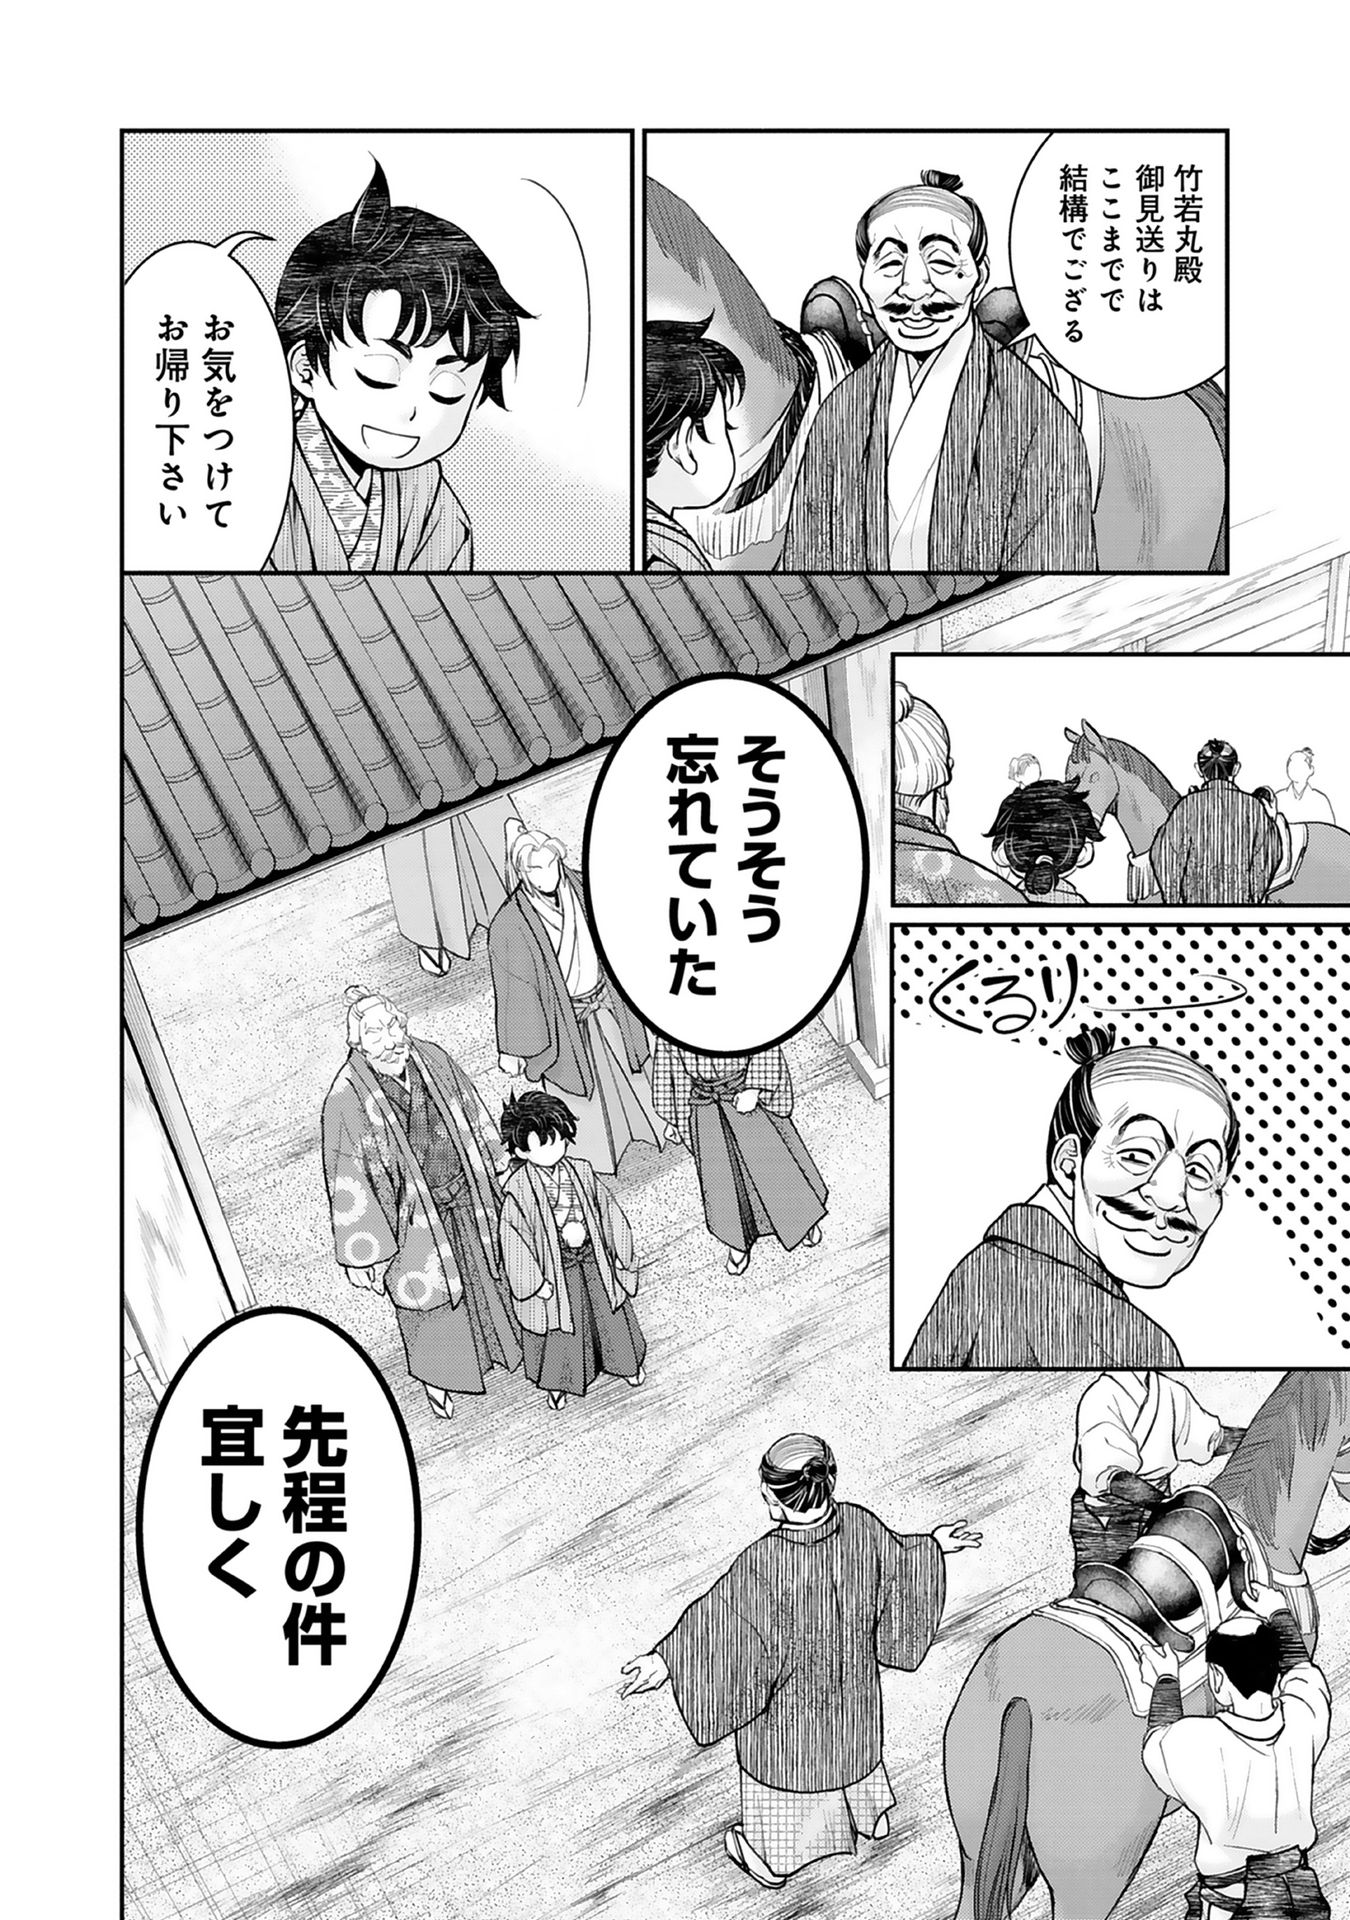 Afumi no Umi – Minamo ga Yureru Toki - Chapter 2 - Page 44